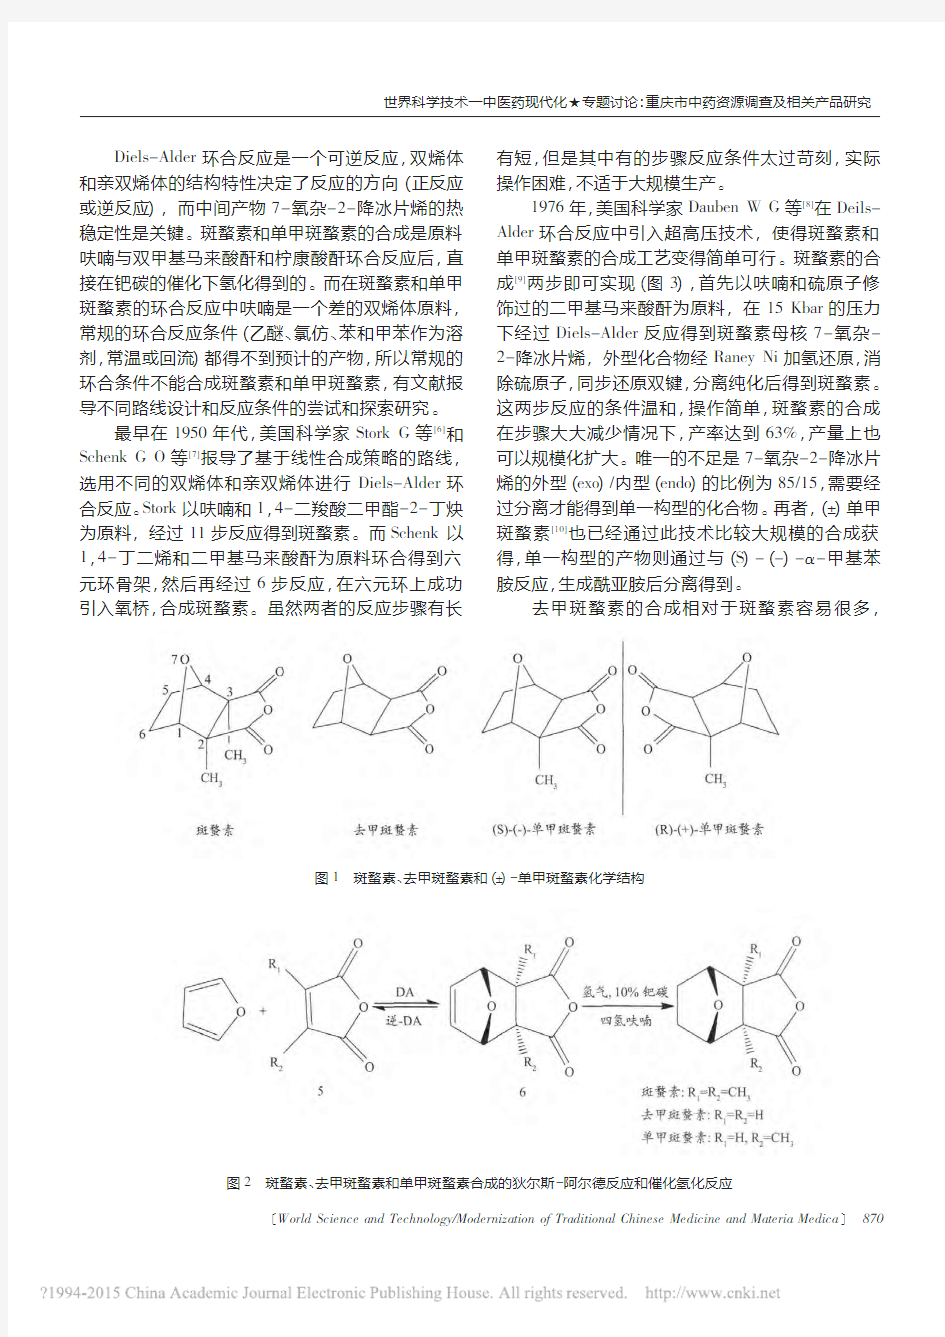 斑蝥类化合物及其衍生物的基本概况和研究进展_杜洪飞